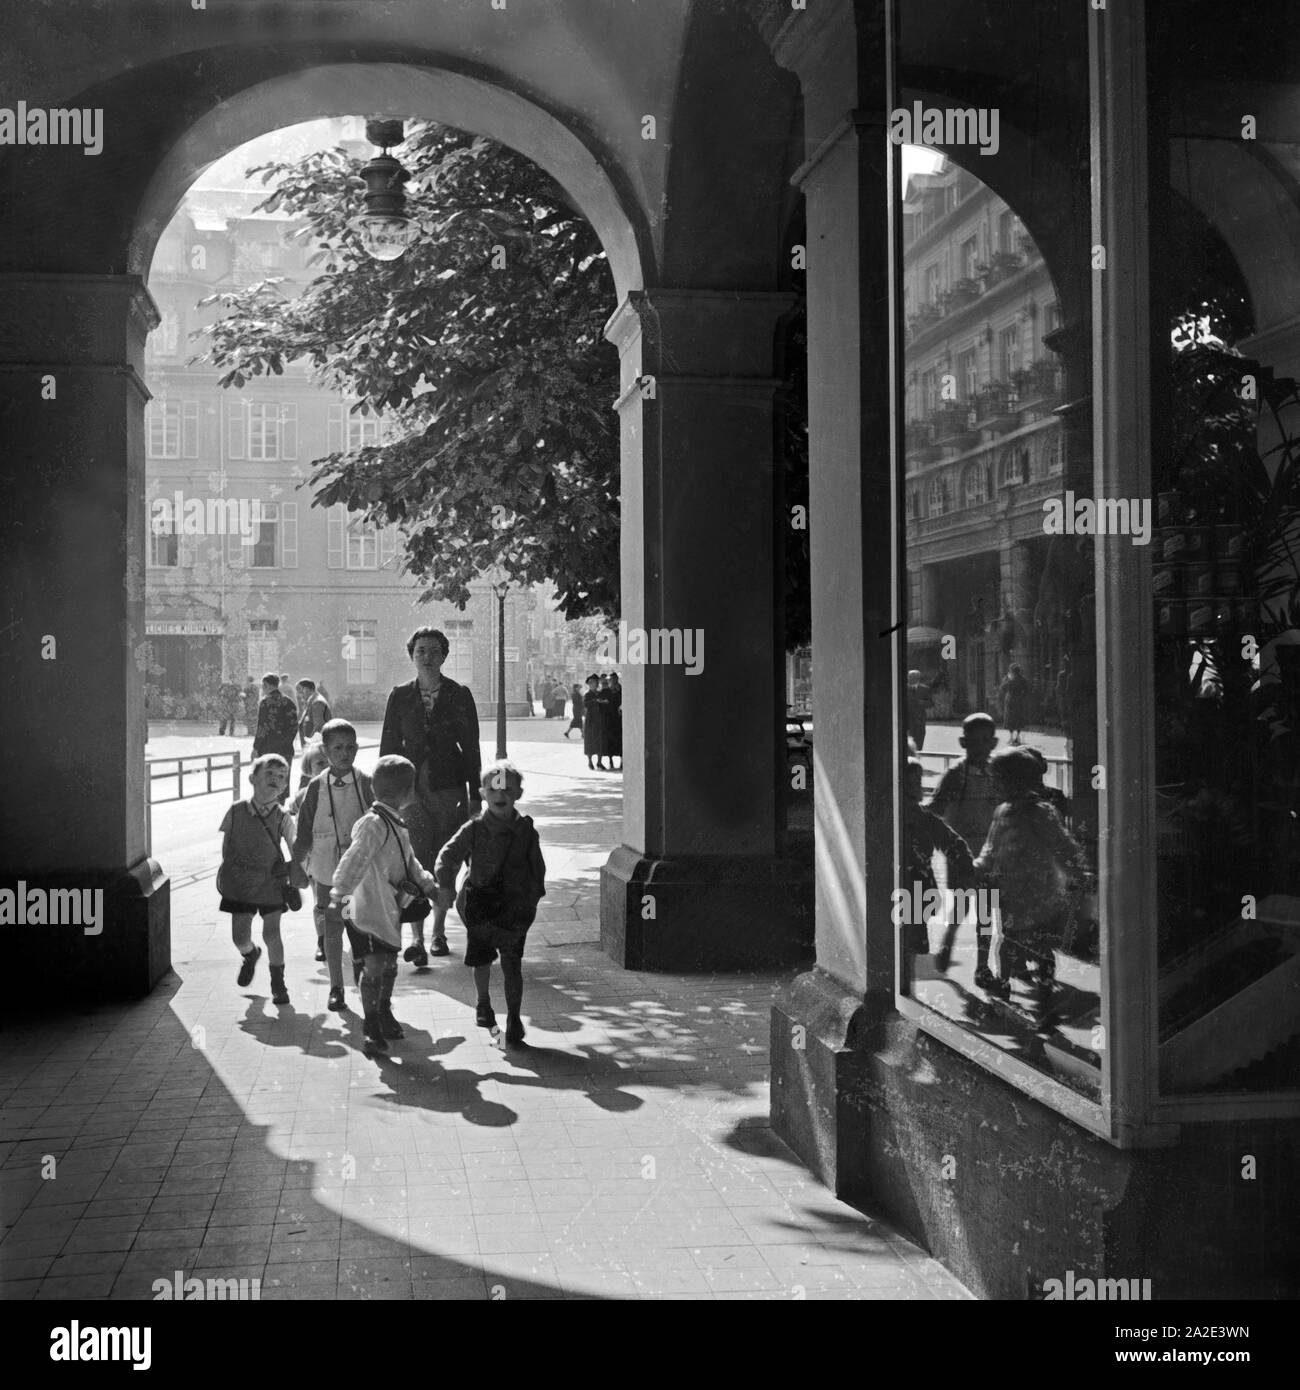 Eine Kindergärtnerin ist mit ihrer Kindergruppe unterwegs in der Innenstadt von Bad Ems, Deutschland 1930er Jahre. Un insegnante kinergarten passeggiando con il suo gruppo di bambini attraverso la parte interna della città di Bad Ems, Germania 1930s. Foto Stock